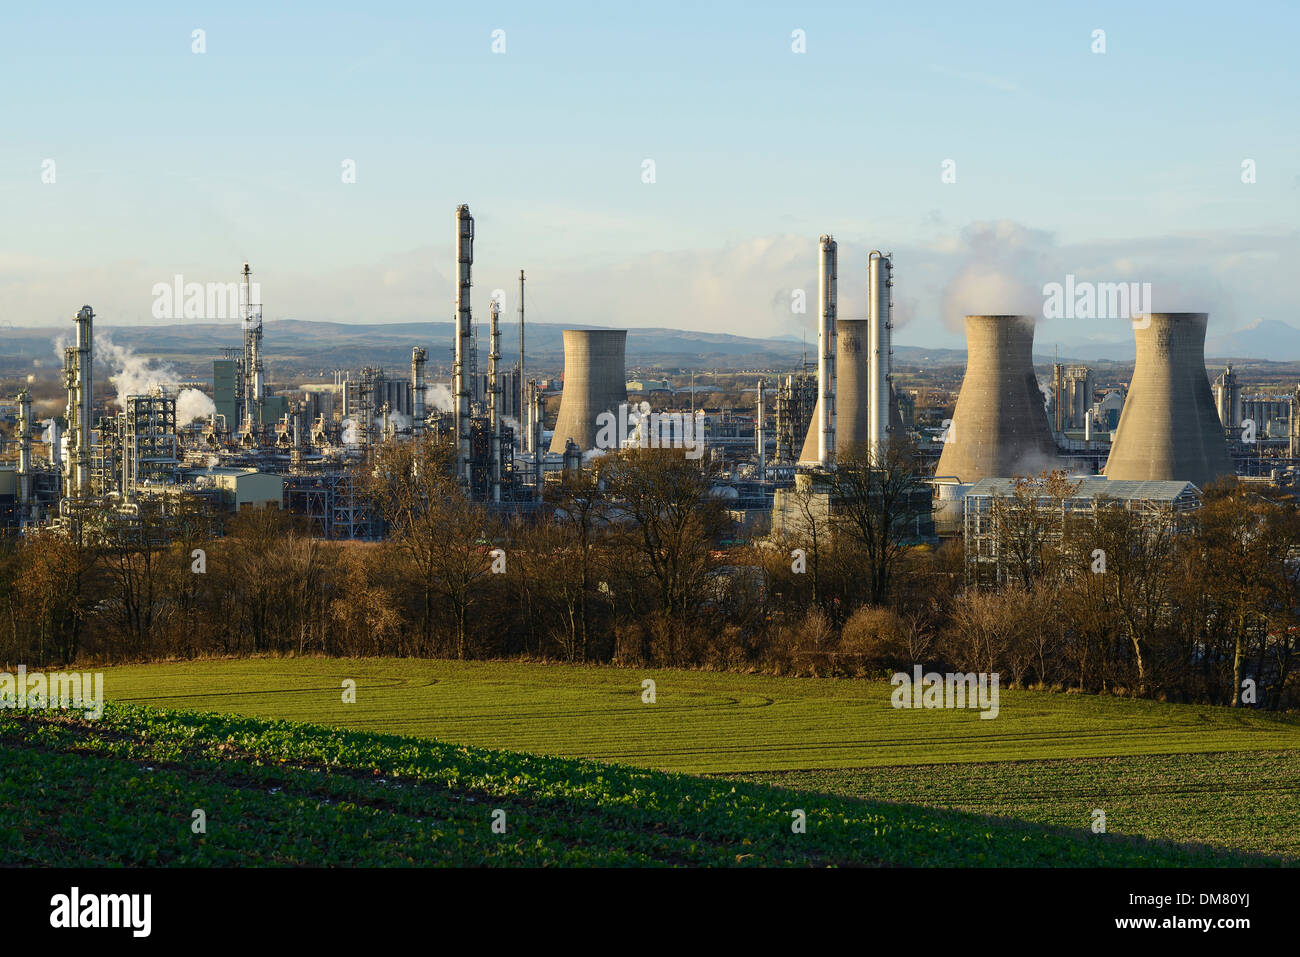 El complejo de refinerías de petróleo en Grangemouth Escocia UK Foto de stock